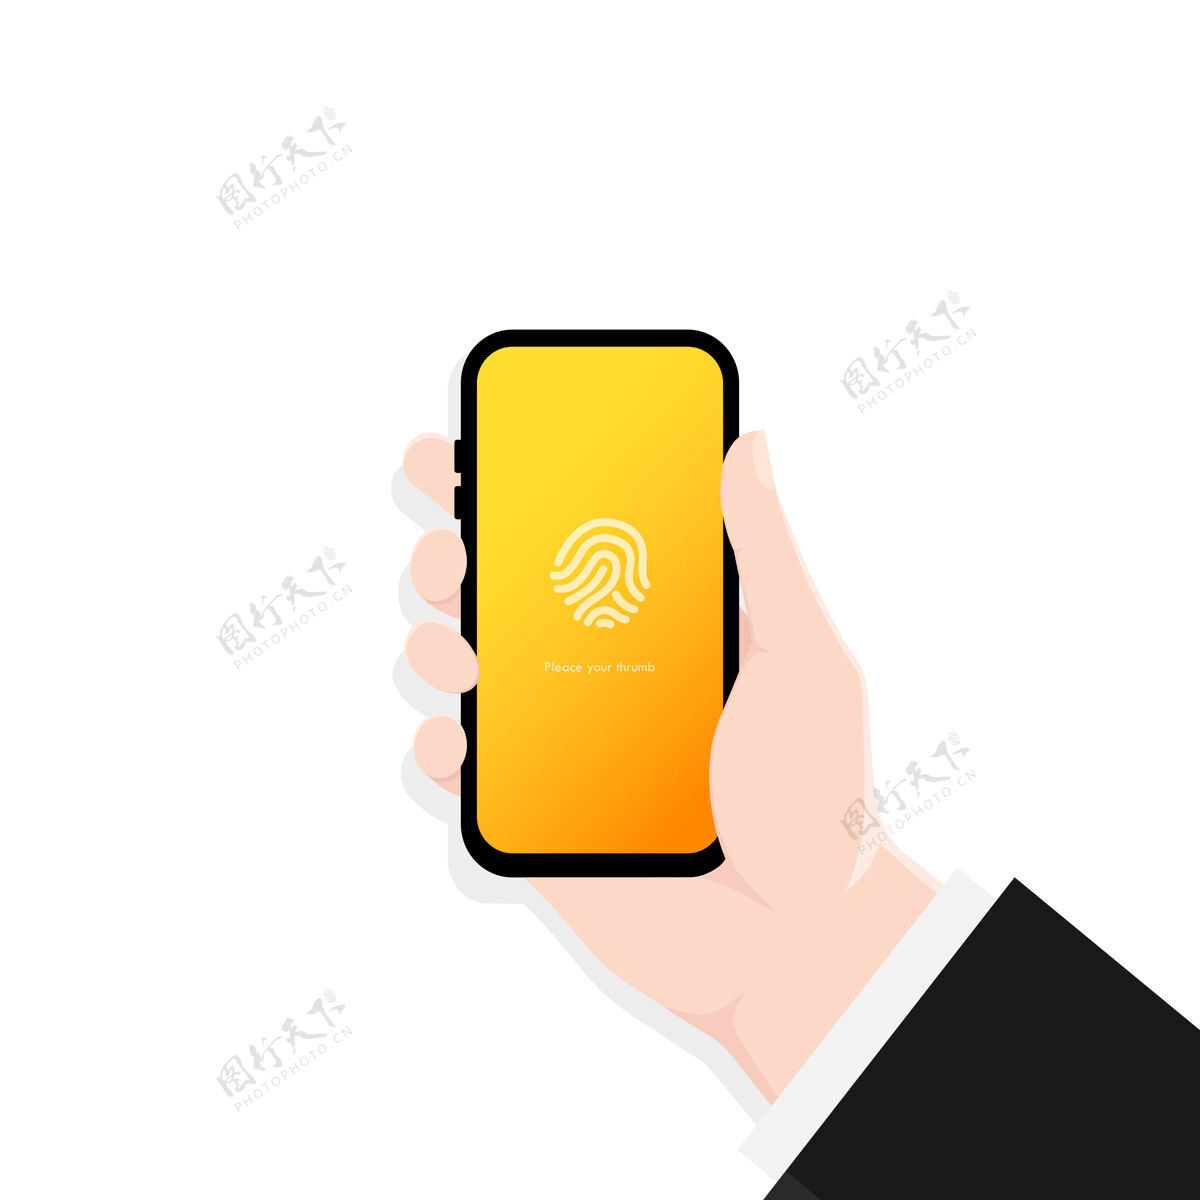 脸手持智能手机屏幕锁定密码界面或触摸id电话房子界面